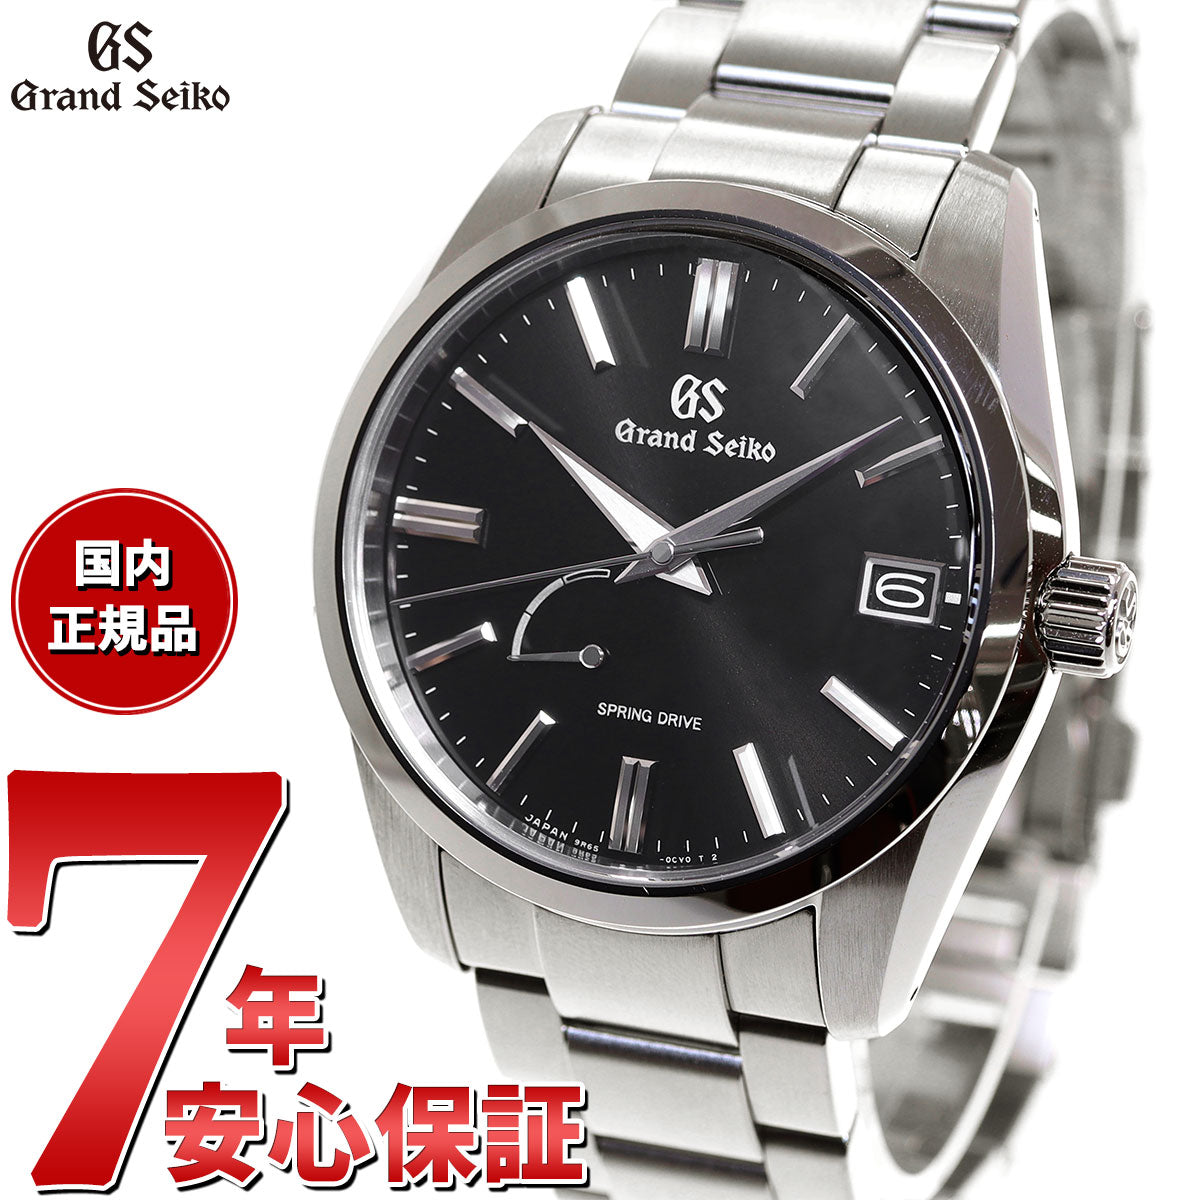 グランドセイコー Grand Seiko SBGA467 ヘリテージコレクション 自動巻 スプリングドライブ 9R65 メンズ 腕時計 日本製 時計  ブラック【60回無金利ローン】